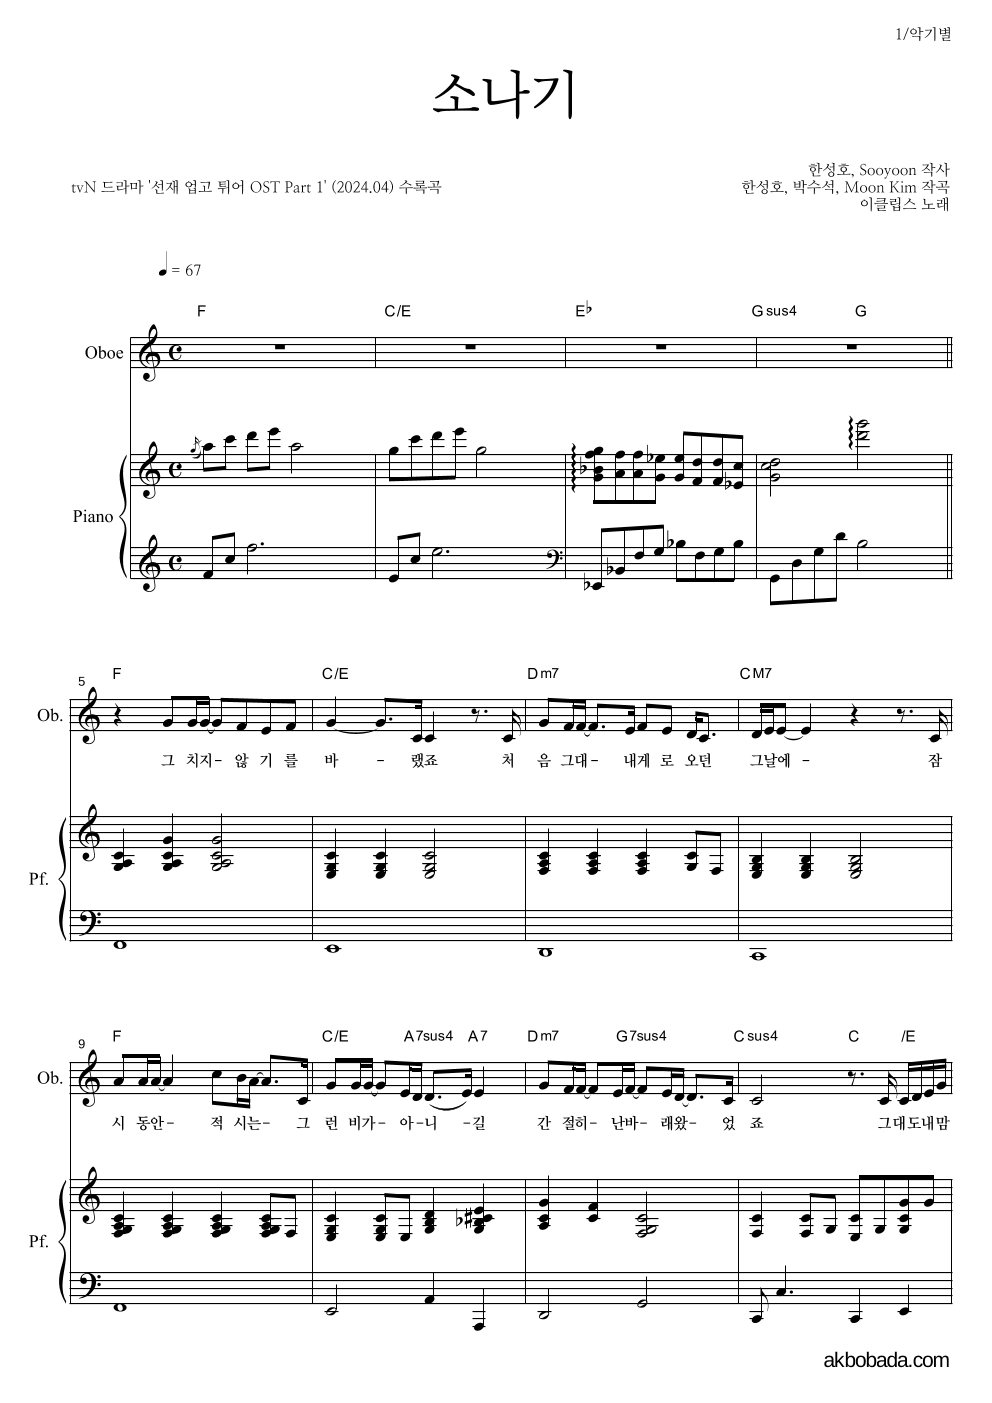 이클립스 - 소나기 오보에&피아노 악보 